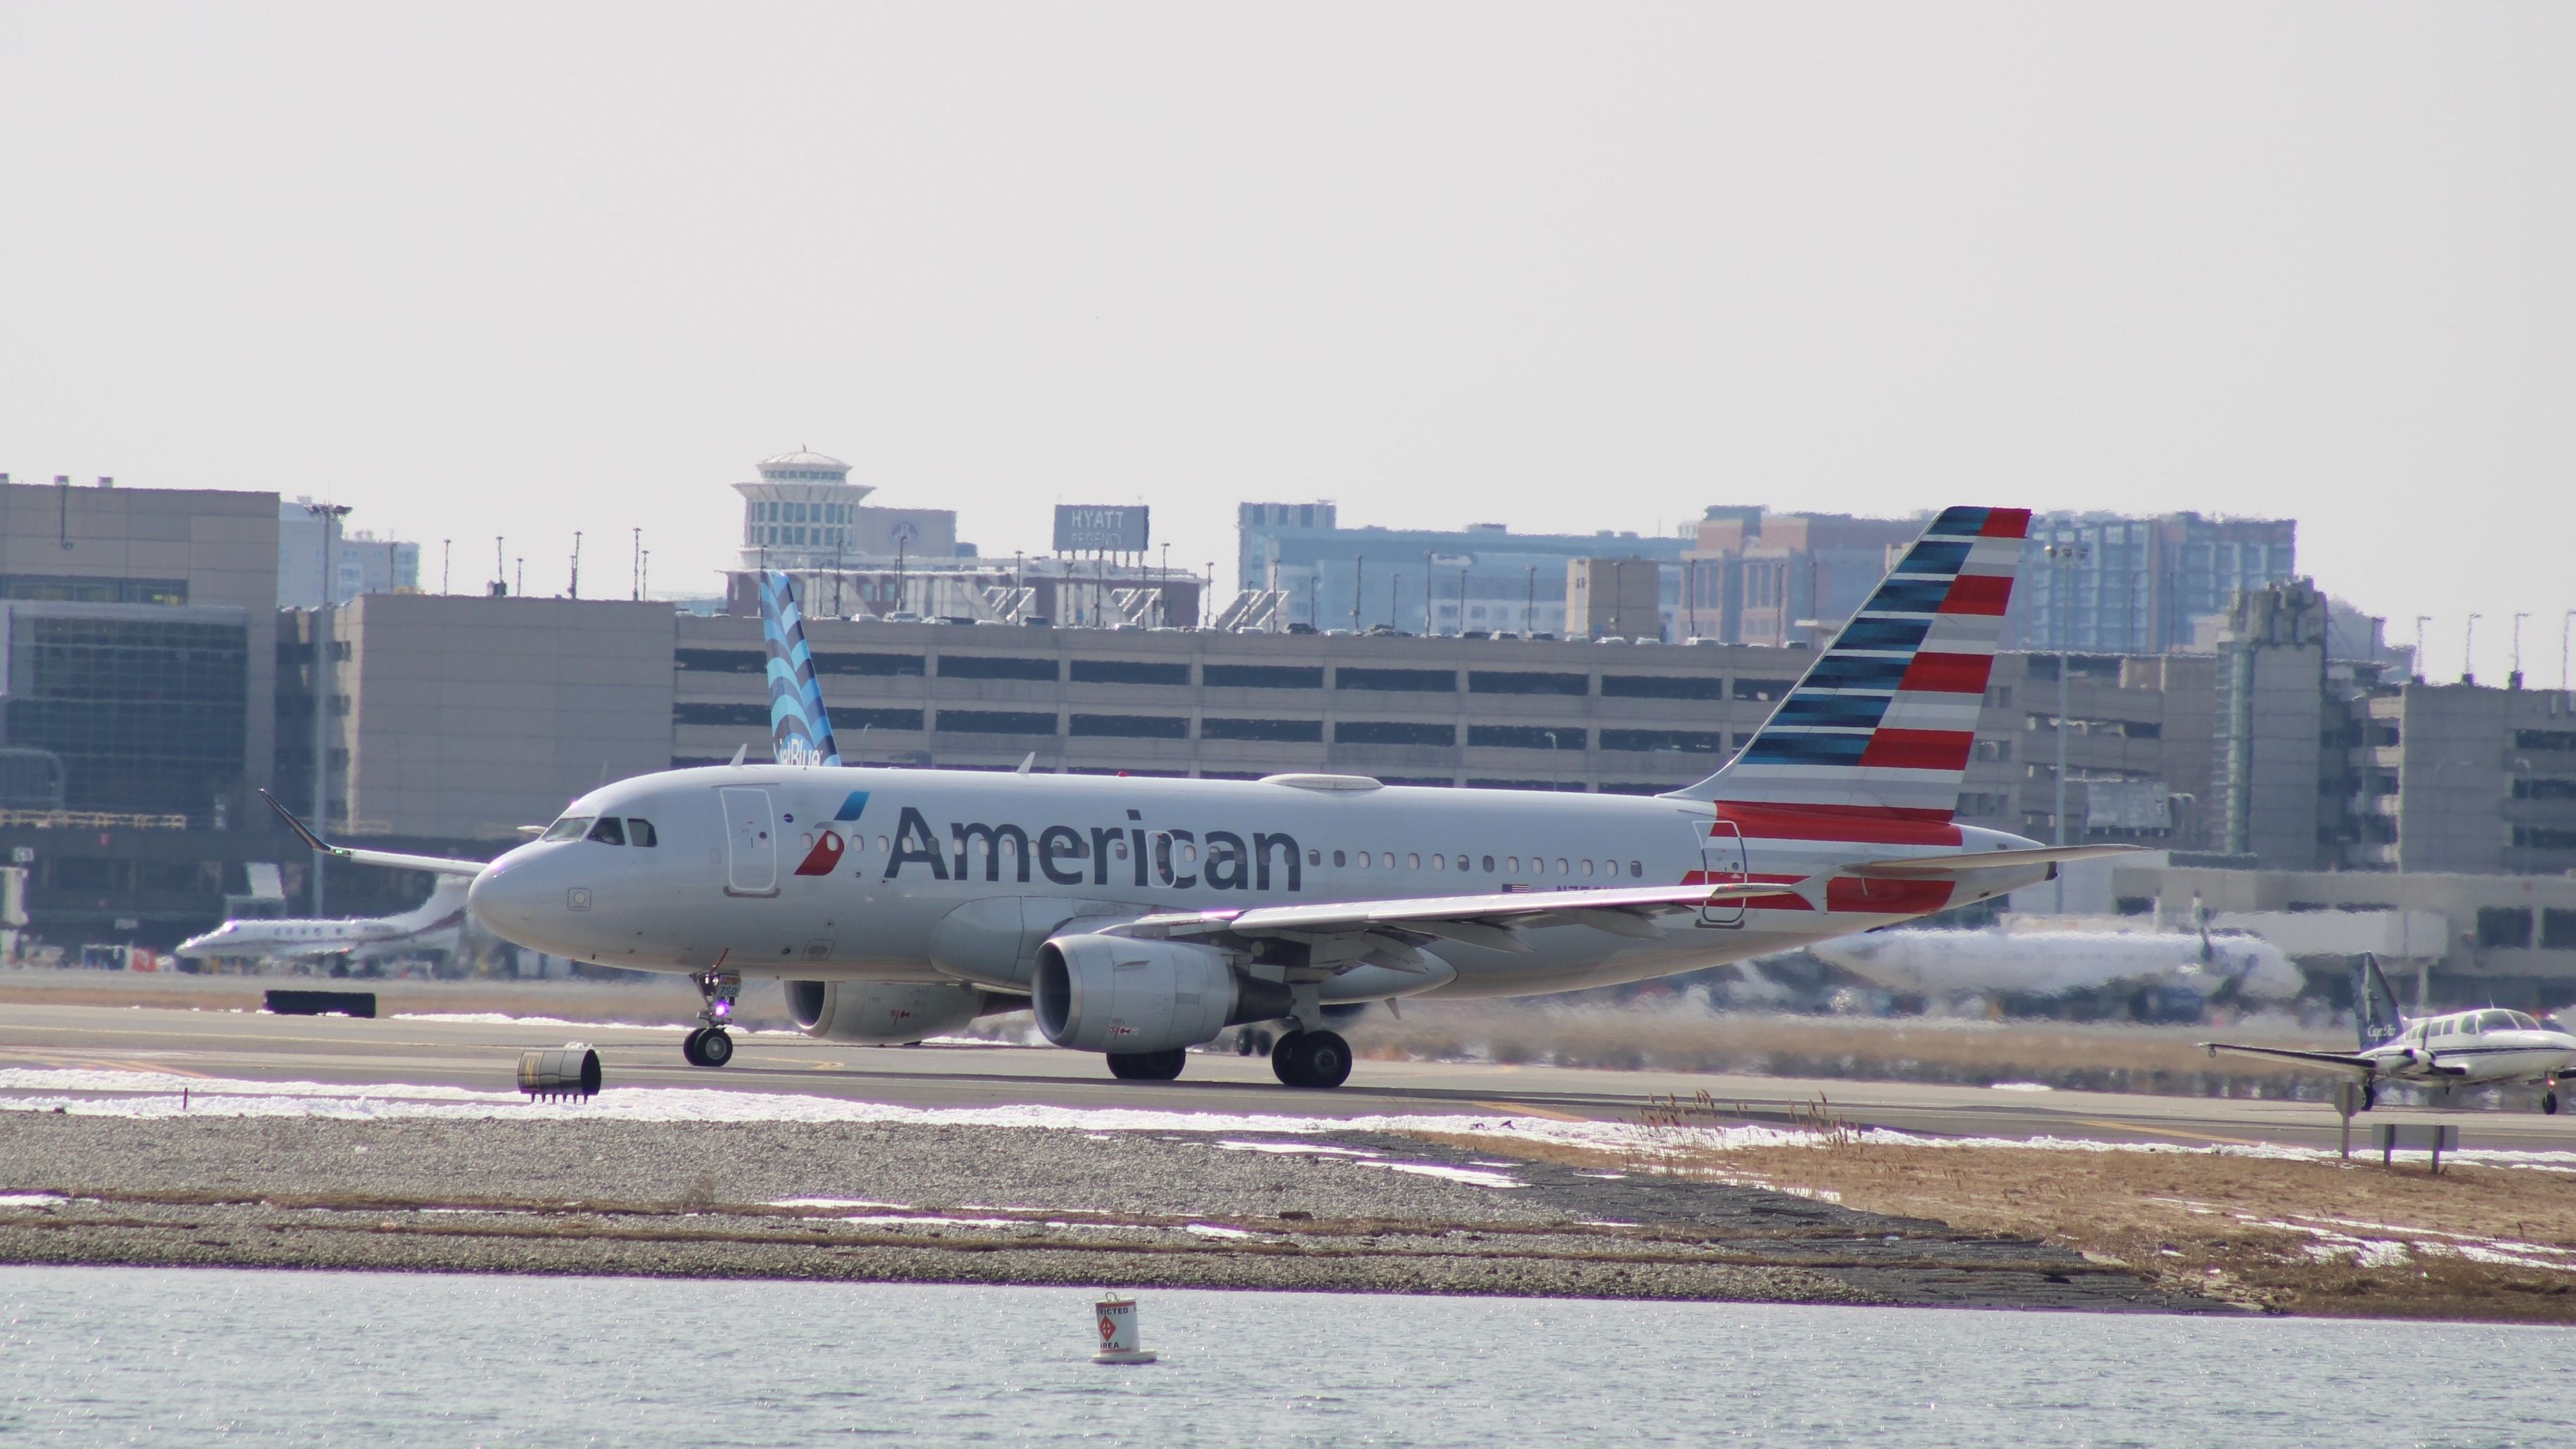 美国航空公司空客A319飞机在波士顿撞上了一辆皮卡车